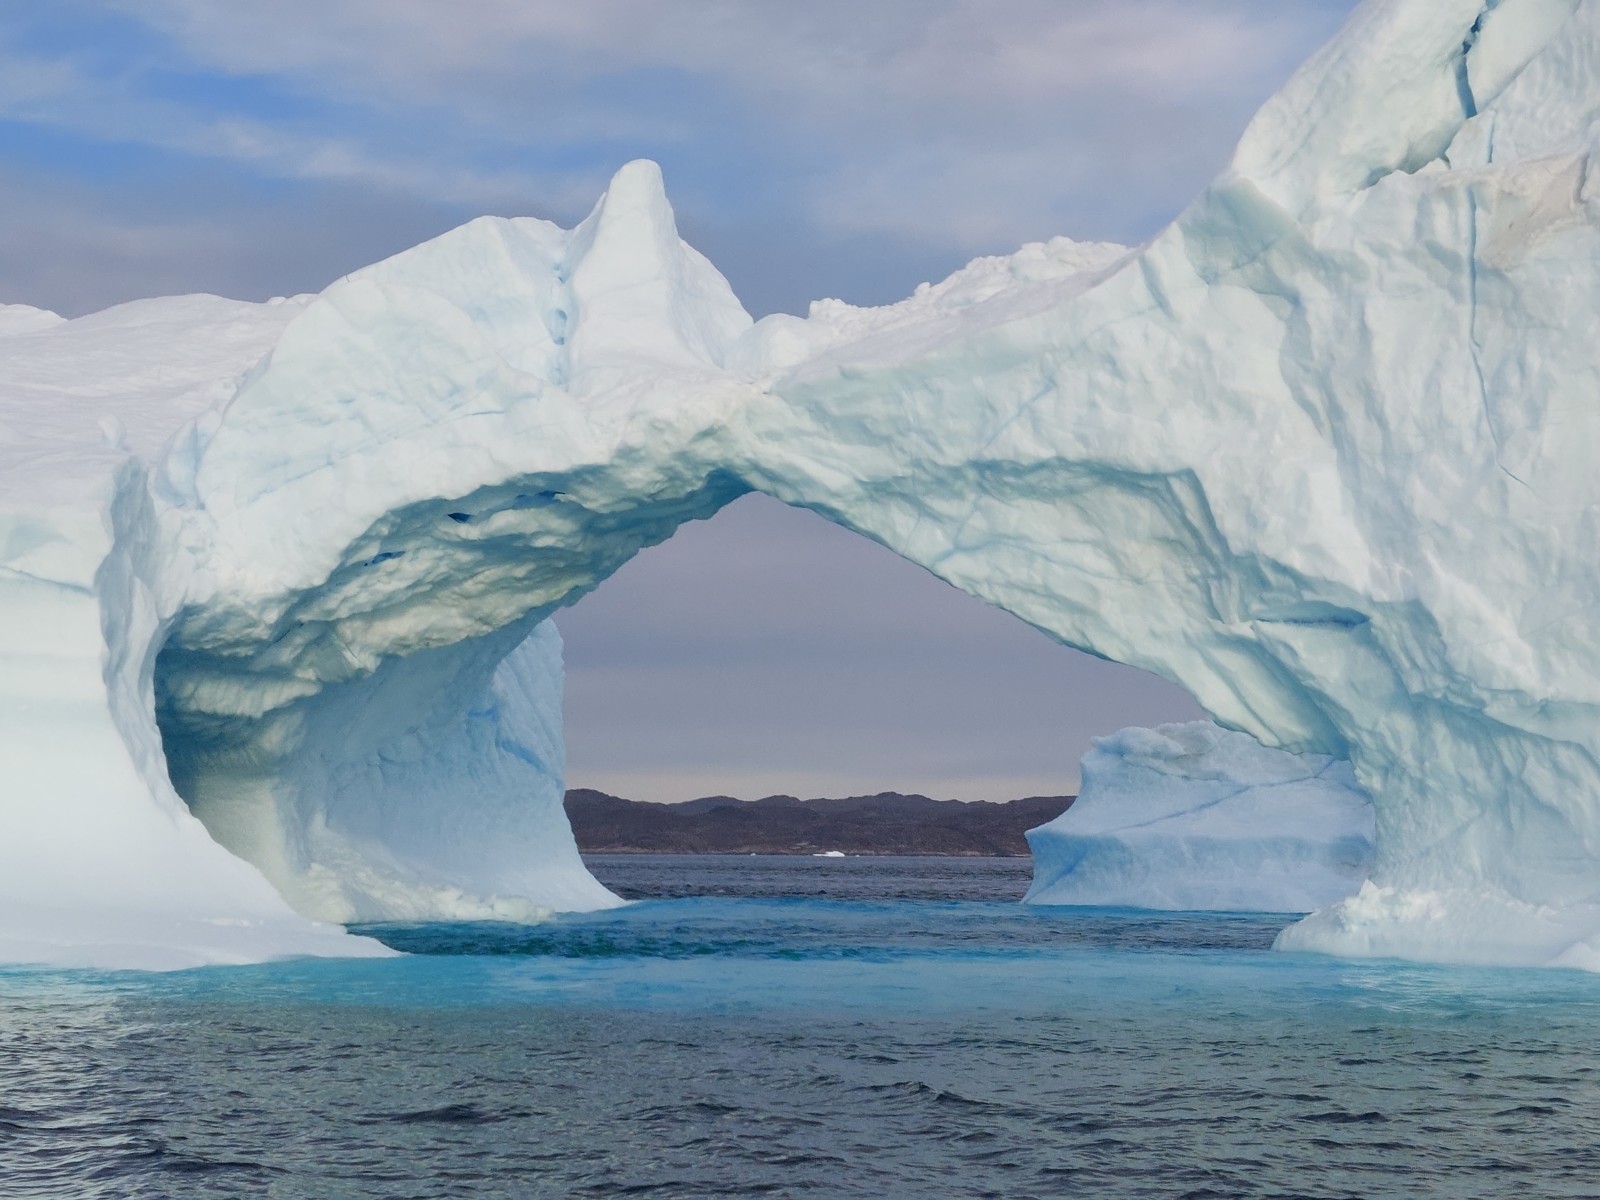 Iceberg arch over the sea.